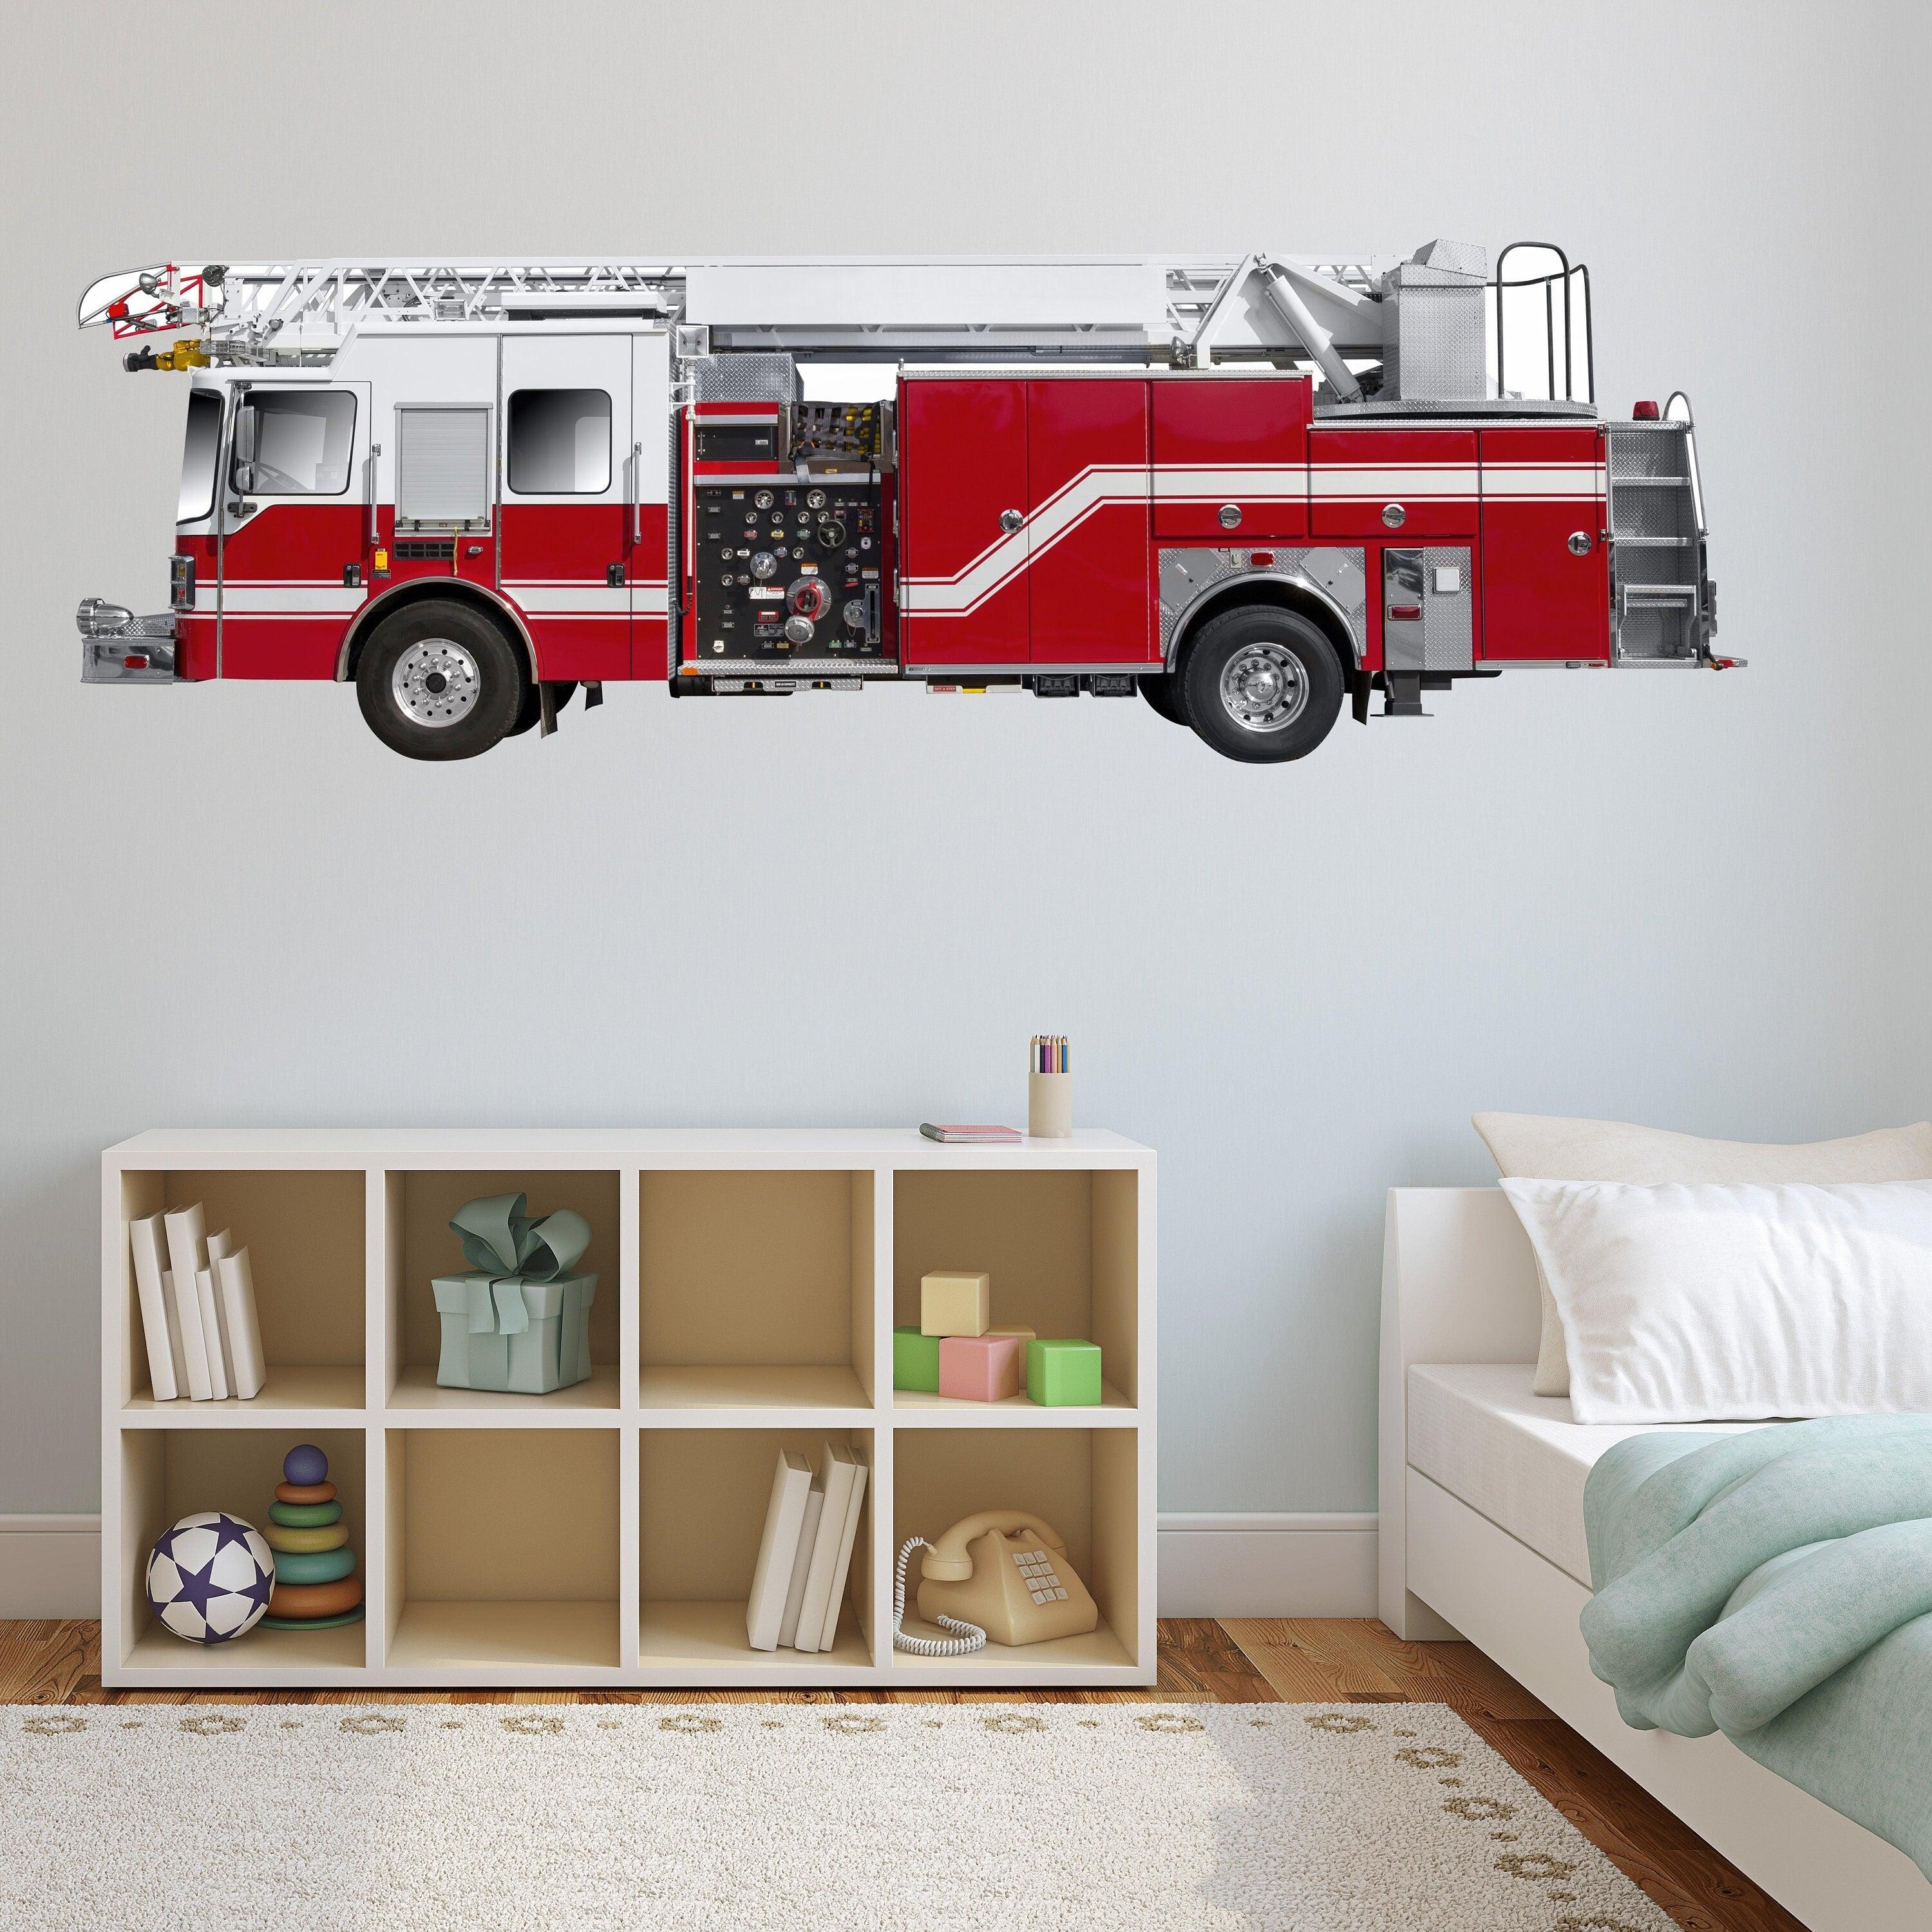 Ladder Fire Truck, Fire Engine, Wall Decal Sticker